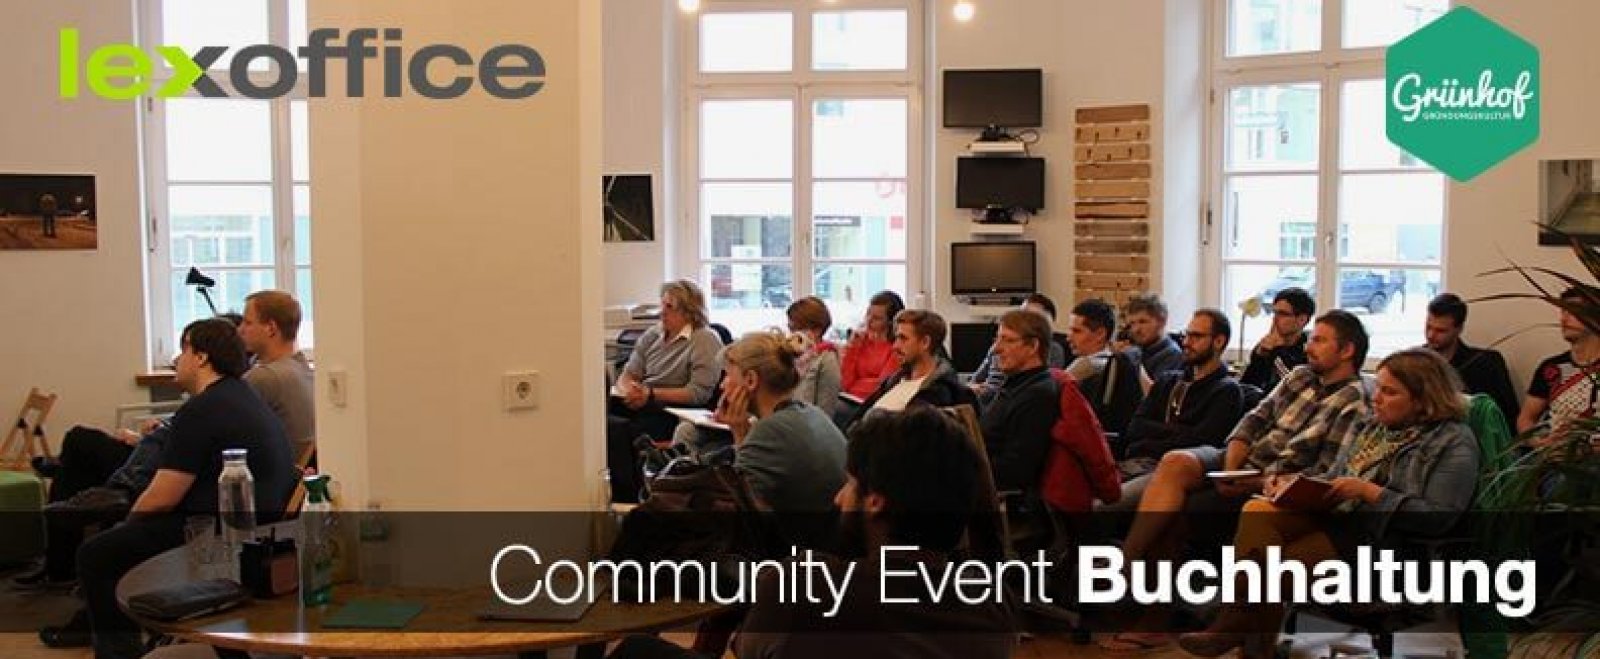 Community Event Buchhaltung: lexoffice und Grünhof in Freiburg